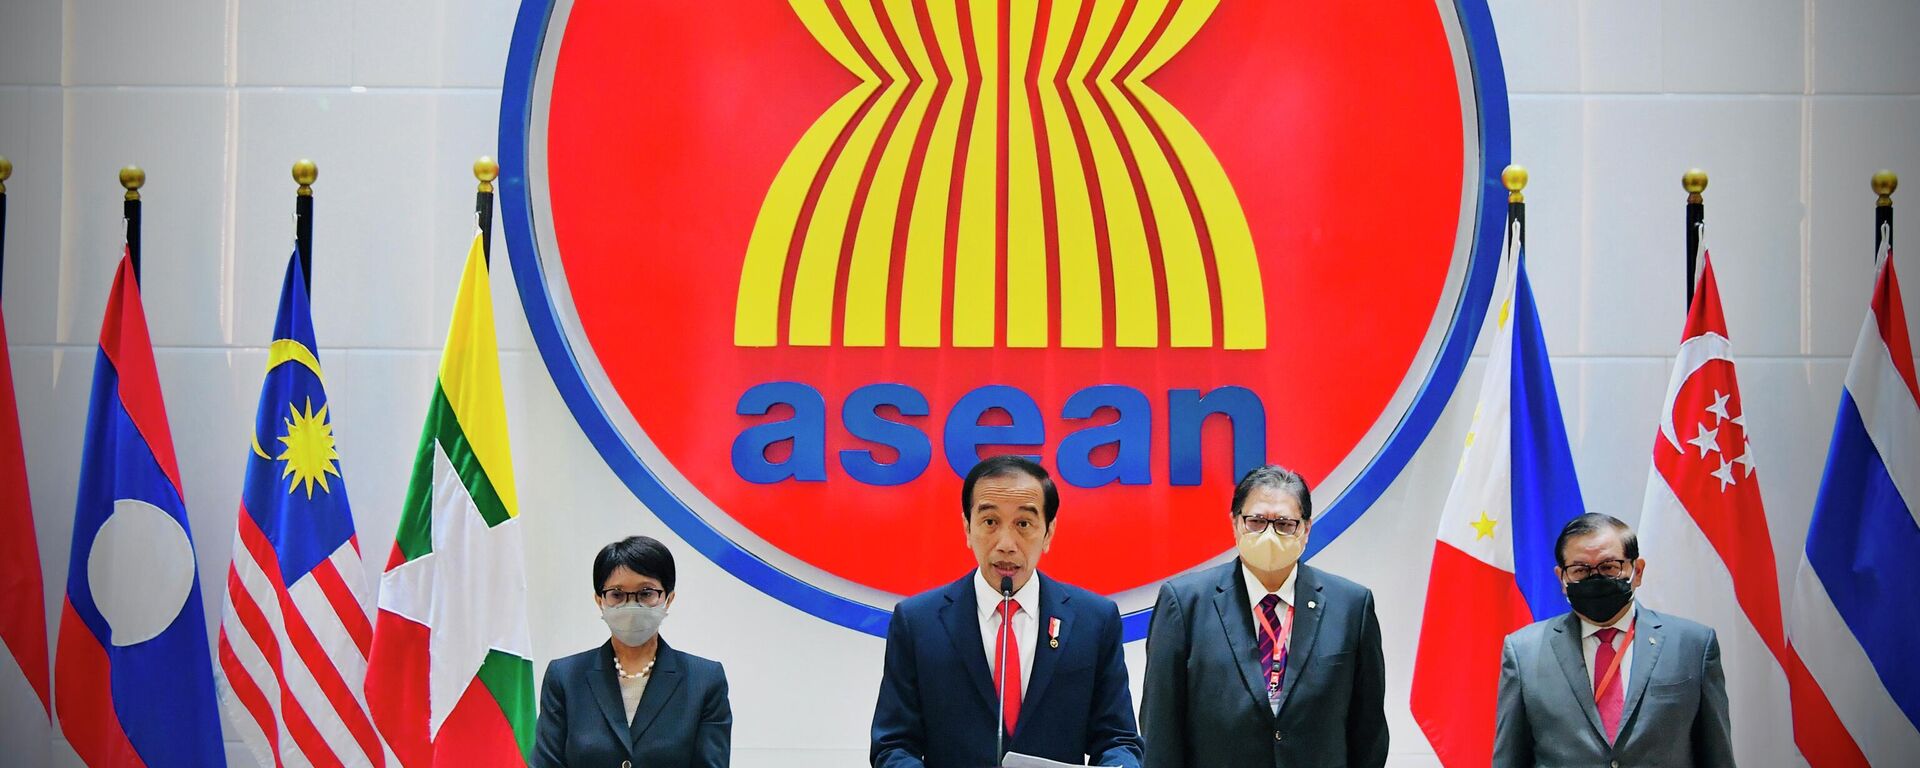 Tổng thống Indonesia Joko Widodo đưa ra một tuyên bố báo chí tại Hội nghị Cấp cao ASEAN tại Jakarta. - Sputnik Việt Nam, 1920, 09.11.2022